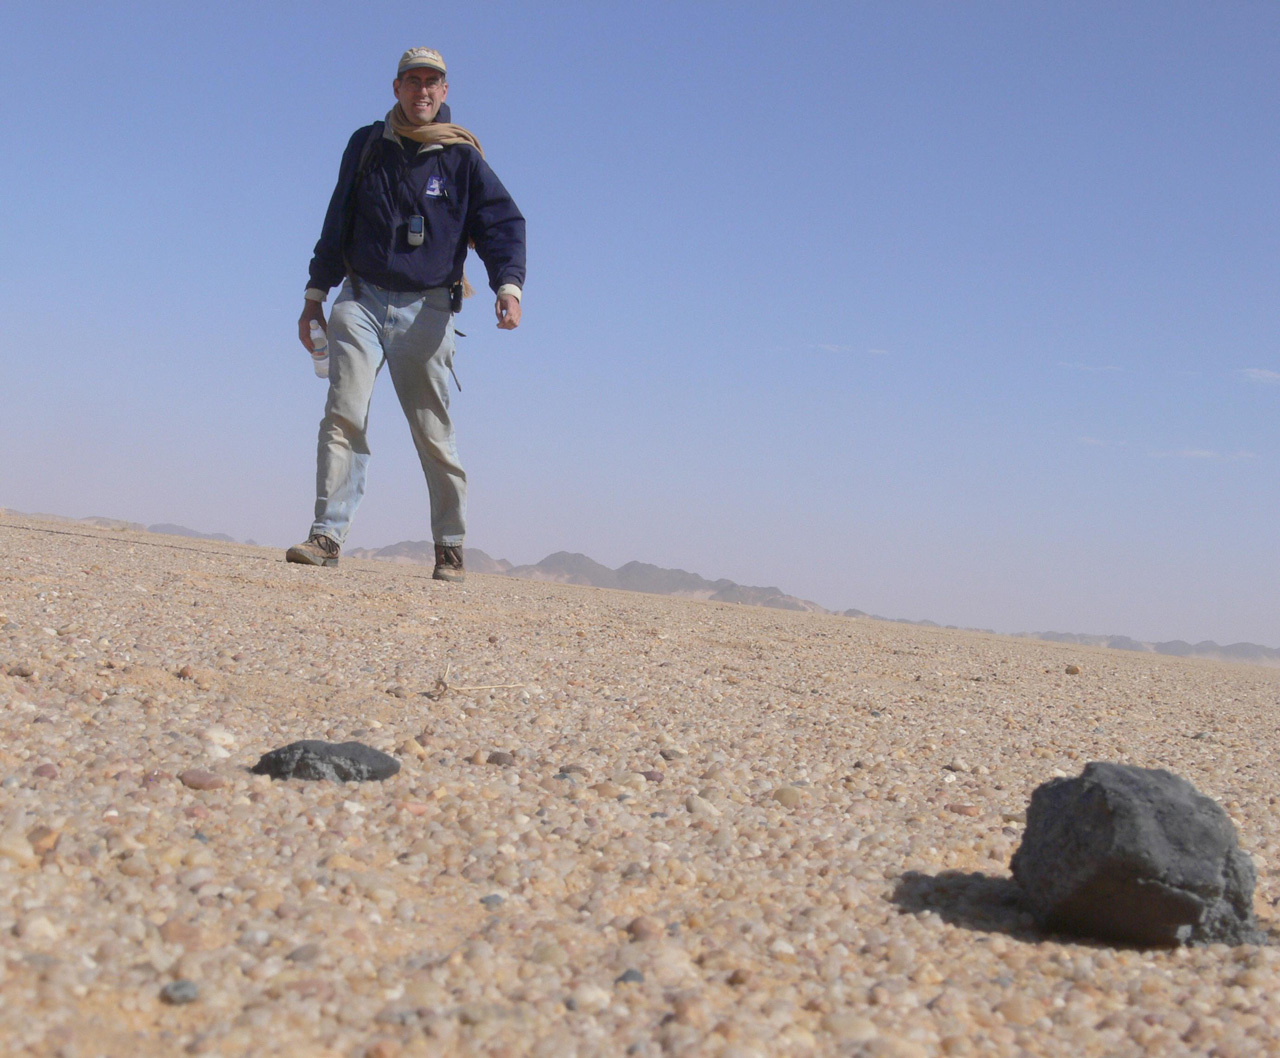 Man standing over meteorite in desert.